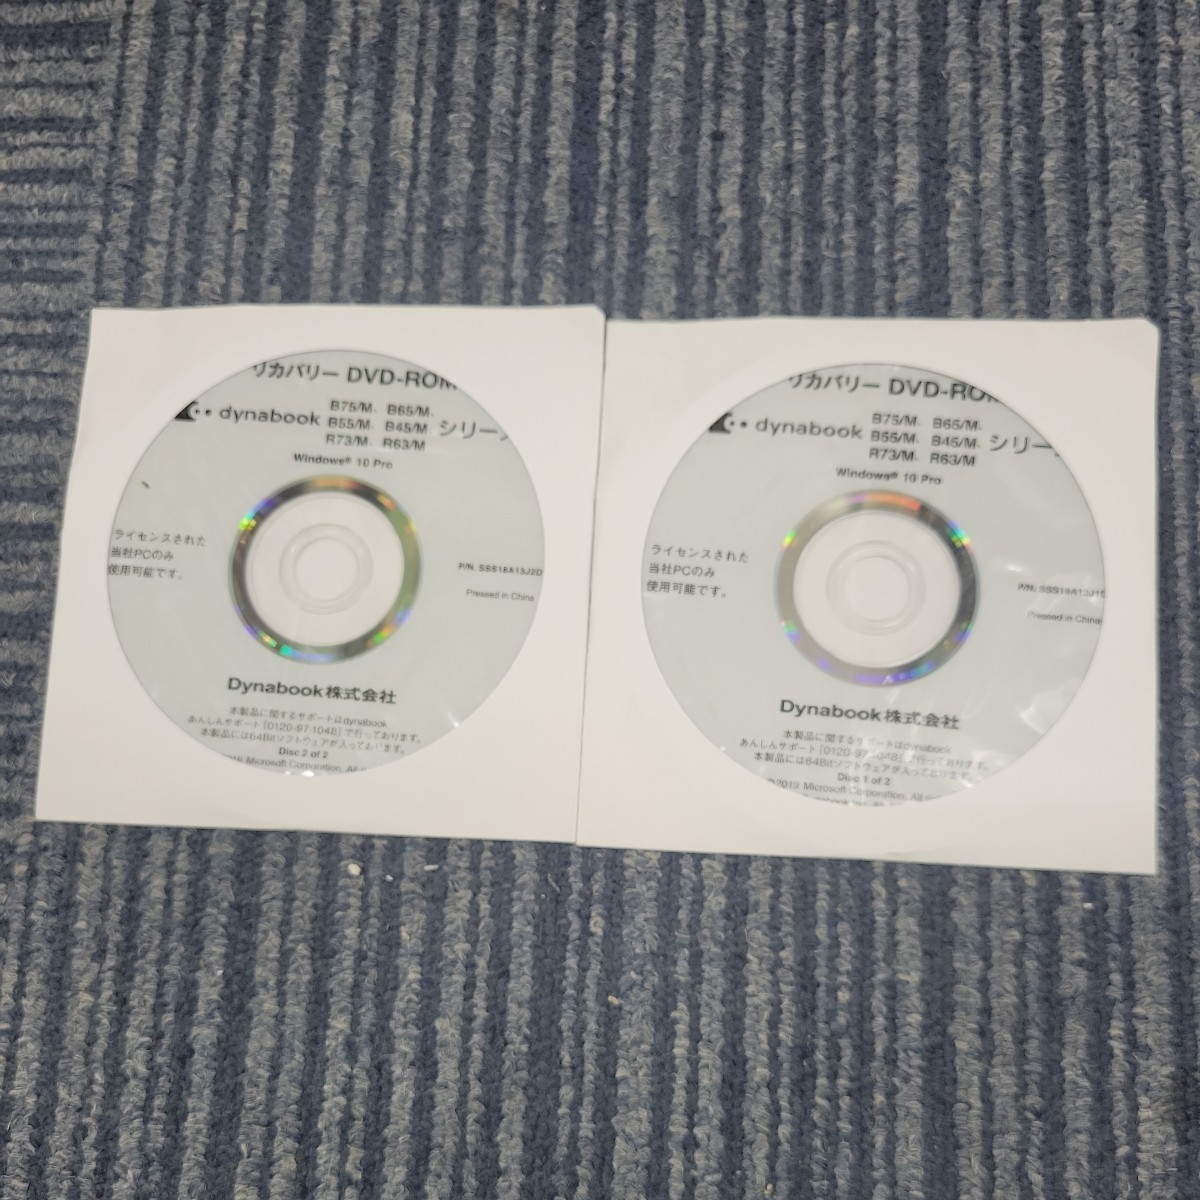 【2枚セット】東芝 TOSHIBA dynabook B75/M B65/M B55/M B45/M R73/M R63/M Win10pro リカバリーディスク DVD-ROM SSS18A13J P02105_画像1